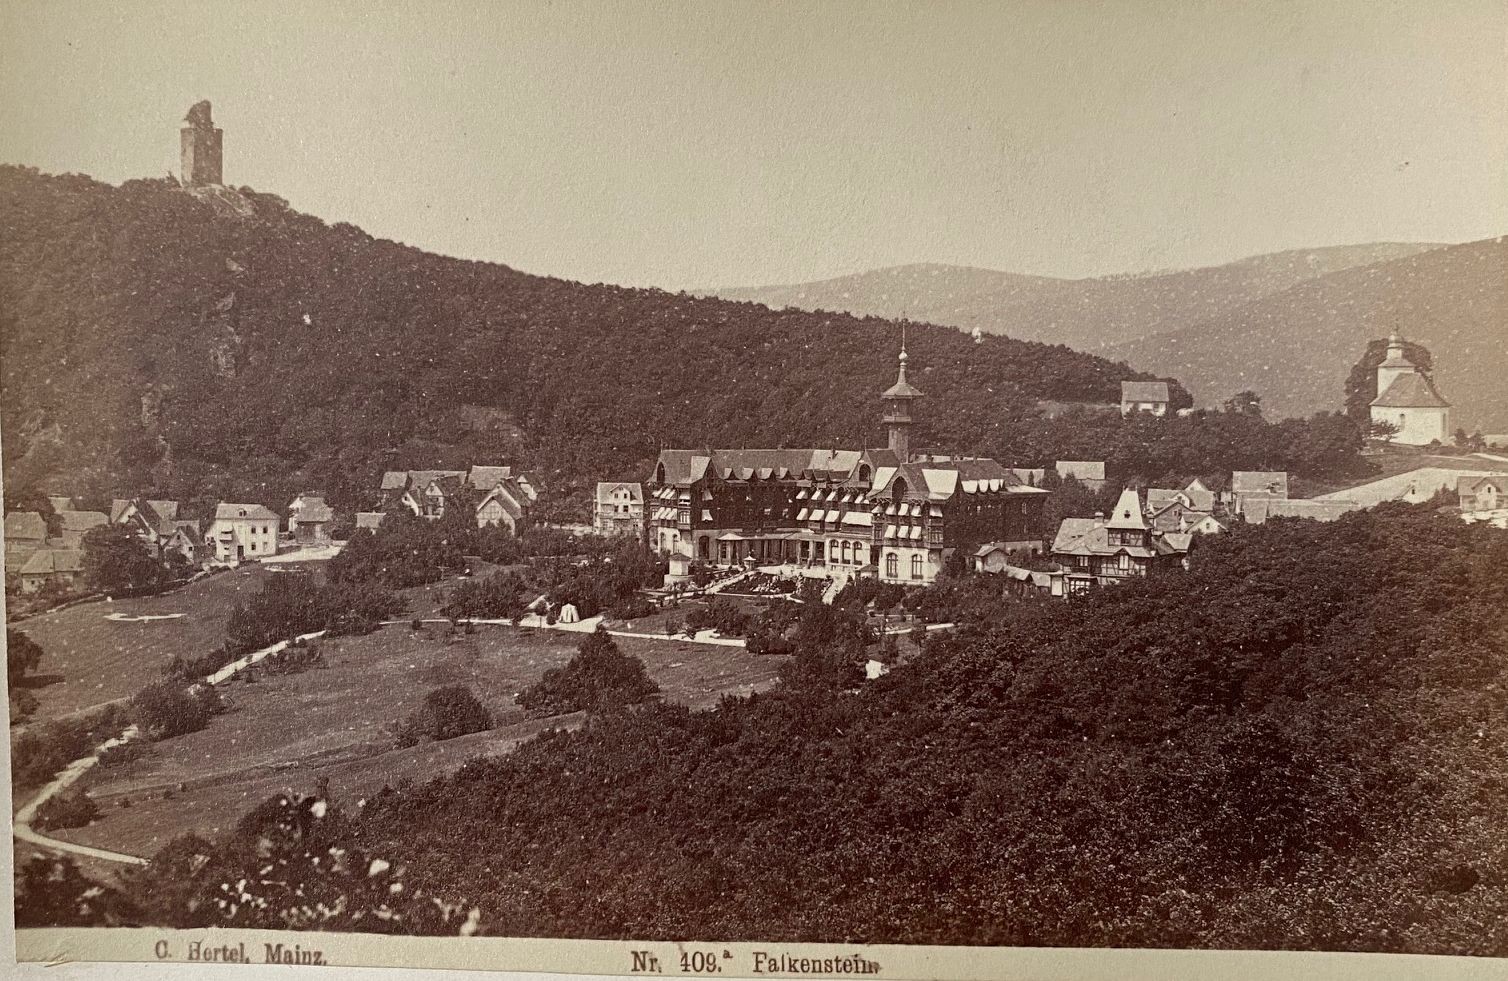 Fotografie, Carl Hertel No. 409a, Falkenstein, ca. 1885 (Taunus-Rhein-Main - Regionalgeschichtliche Sammlung Dr. Stefan Naas CC BY-NC-SA)